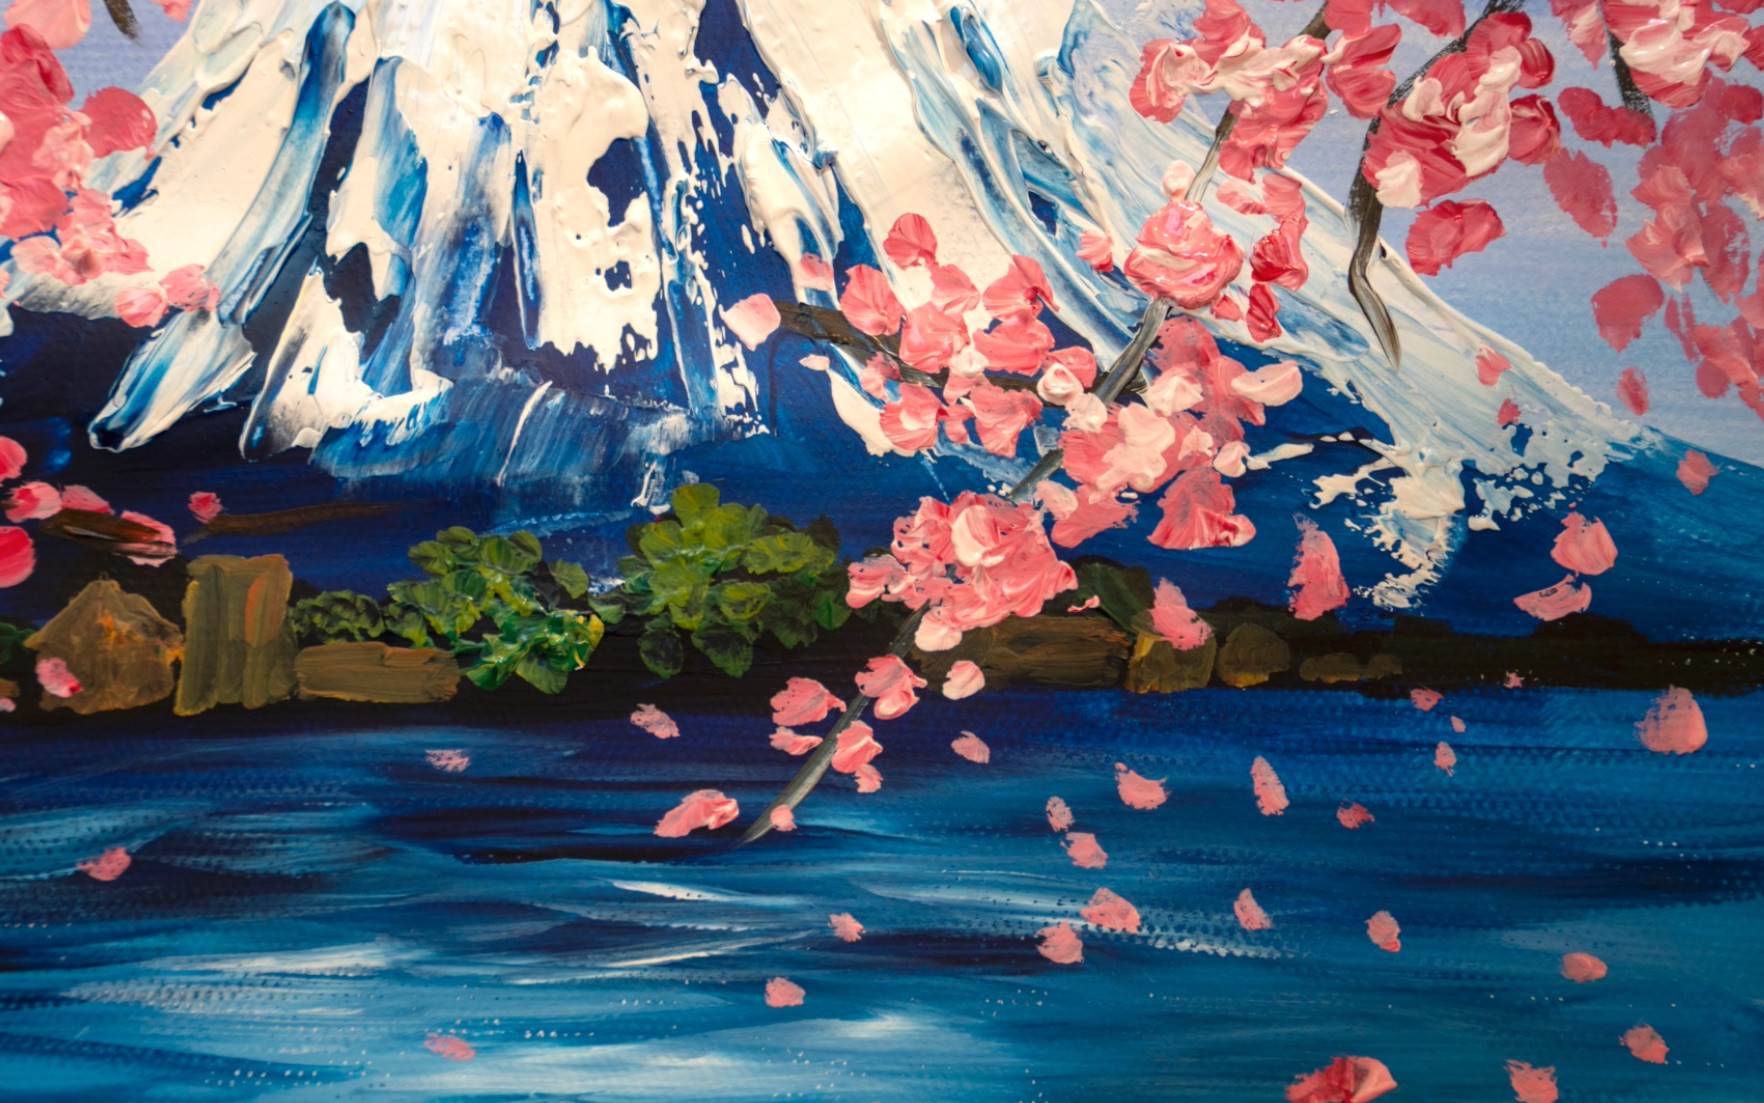 富士山水粉画富士山水粉画教程